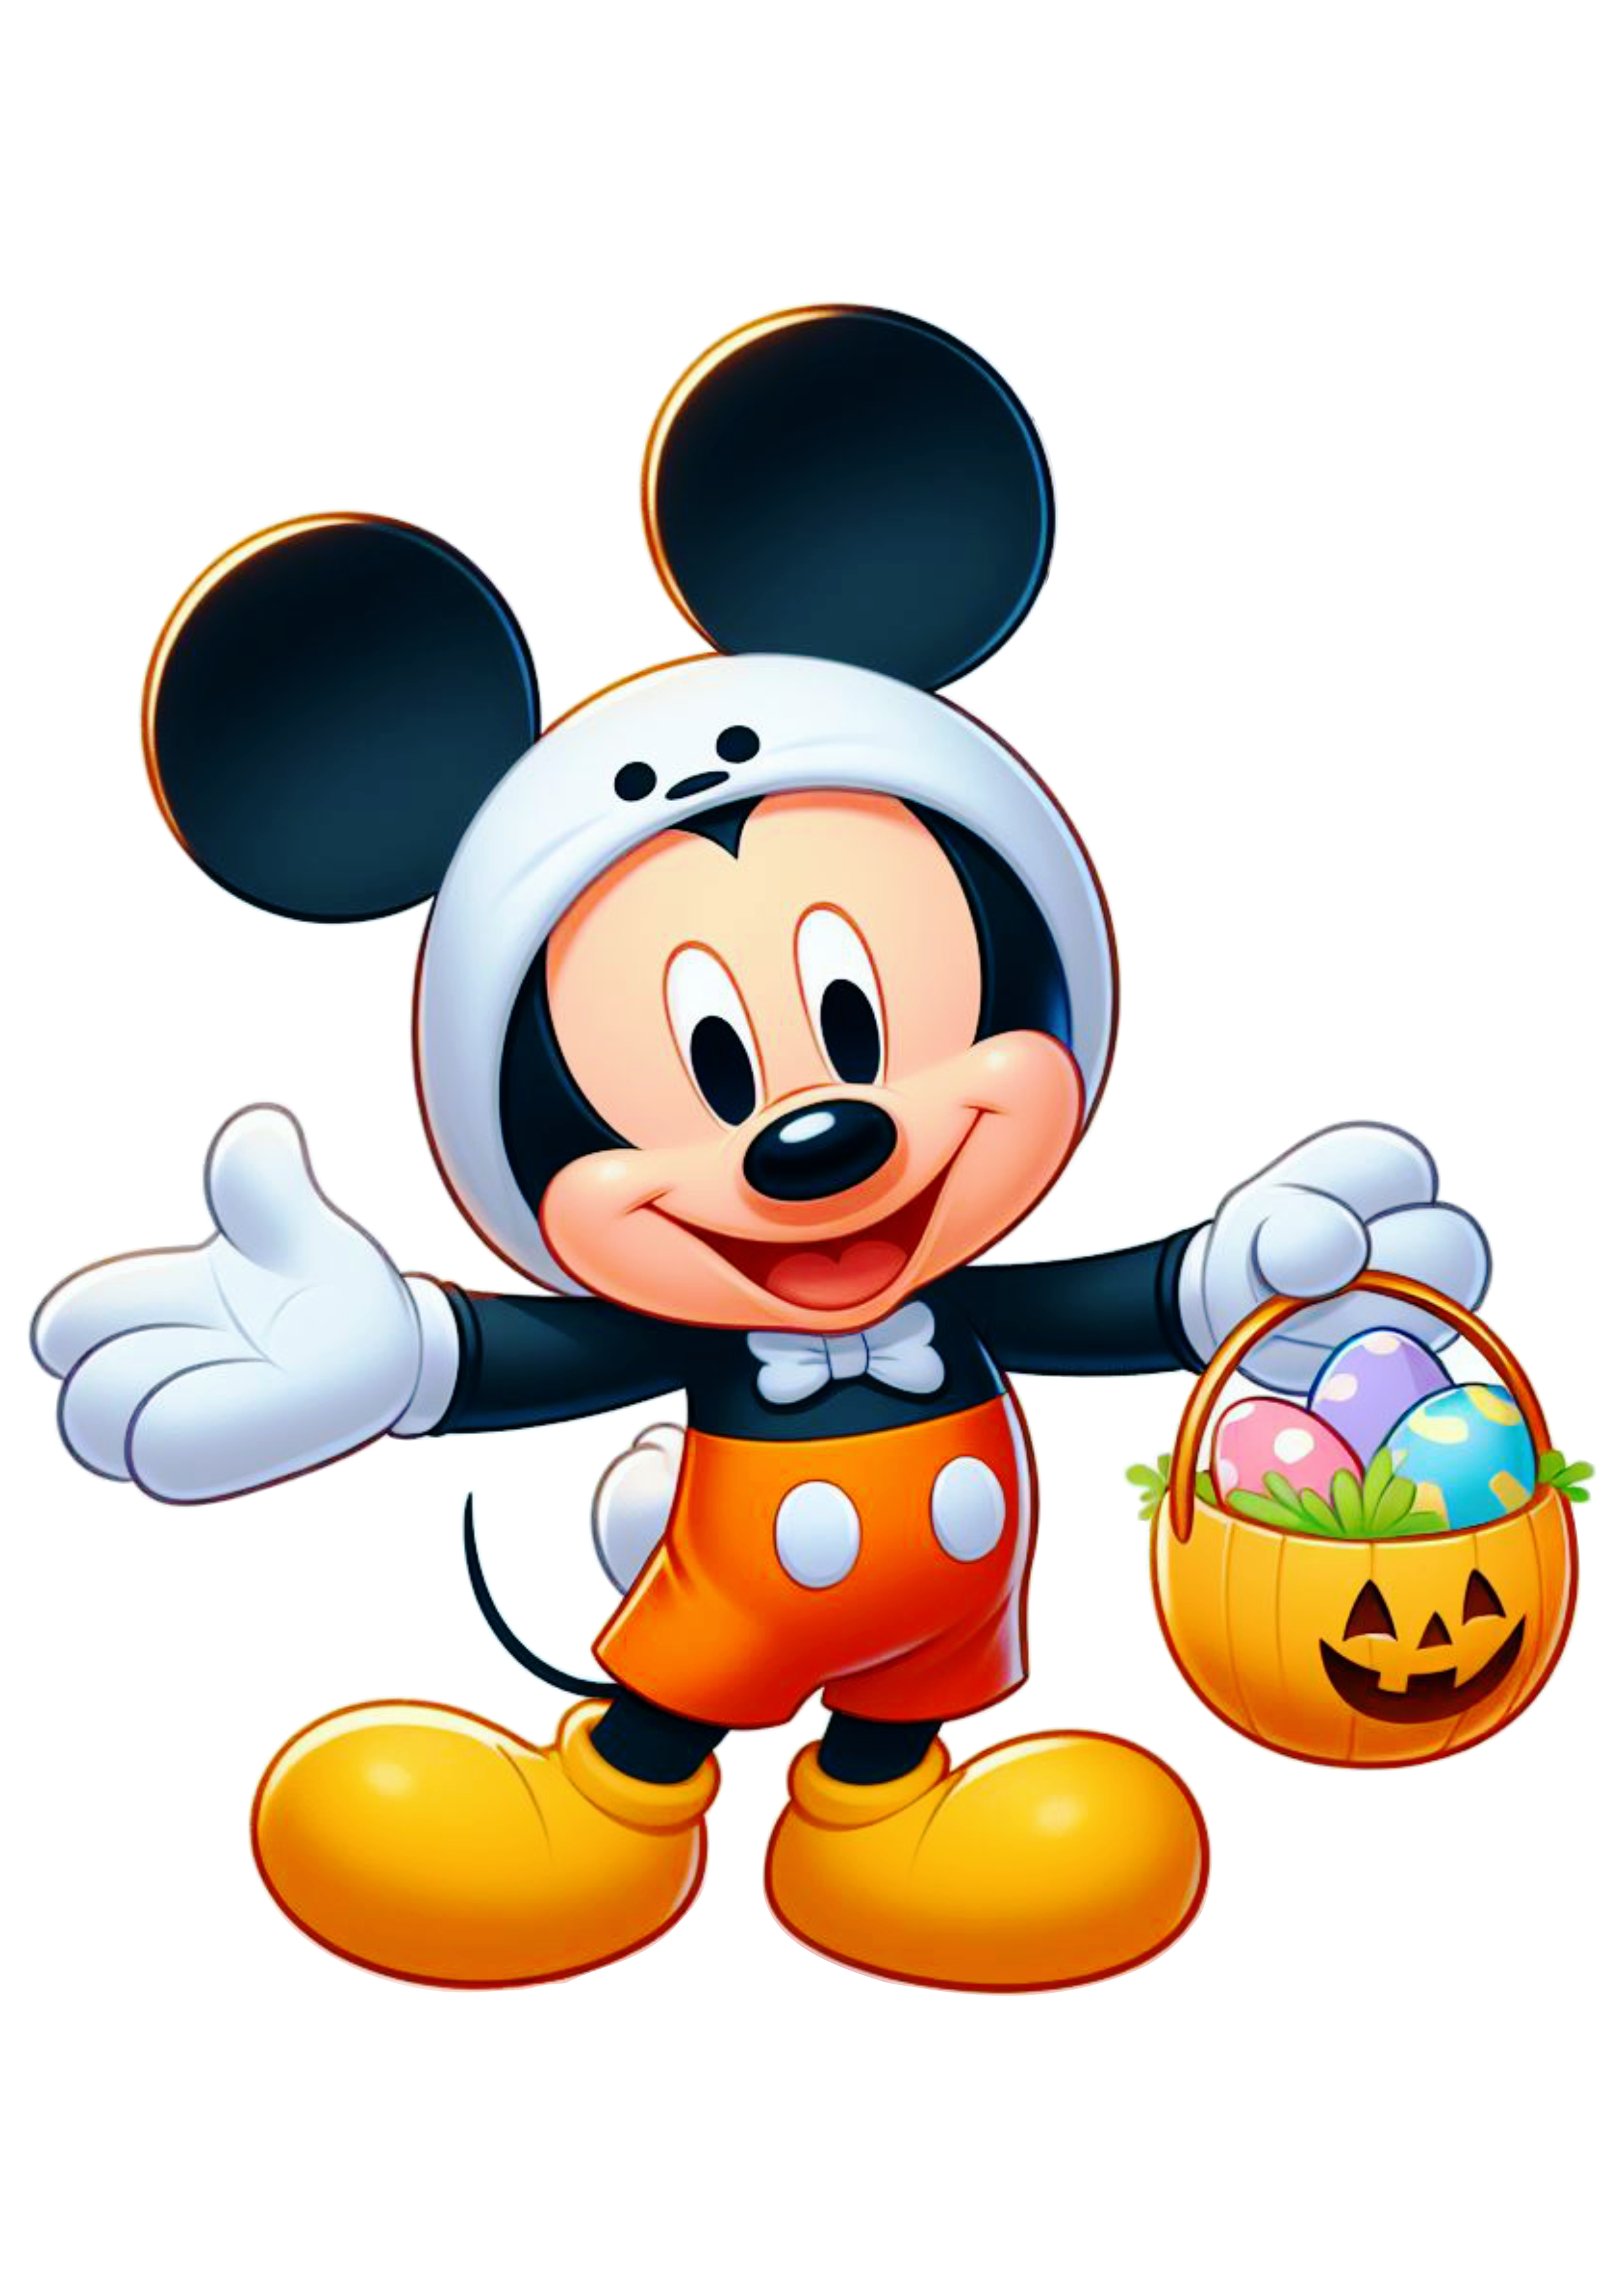 Disney Mickey mouse fantasiado de coelhinho da páscoa fundo transparente clipart vetor ilustração cesta de ovos png